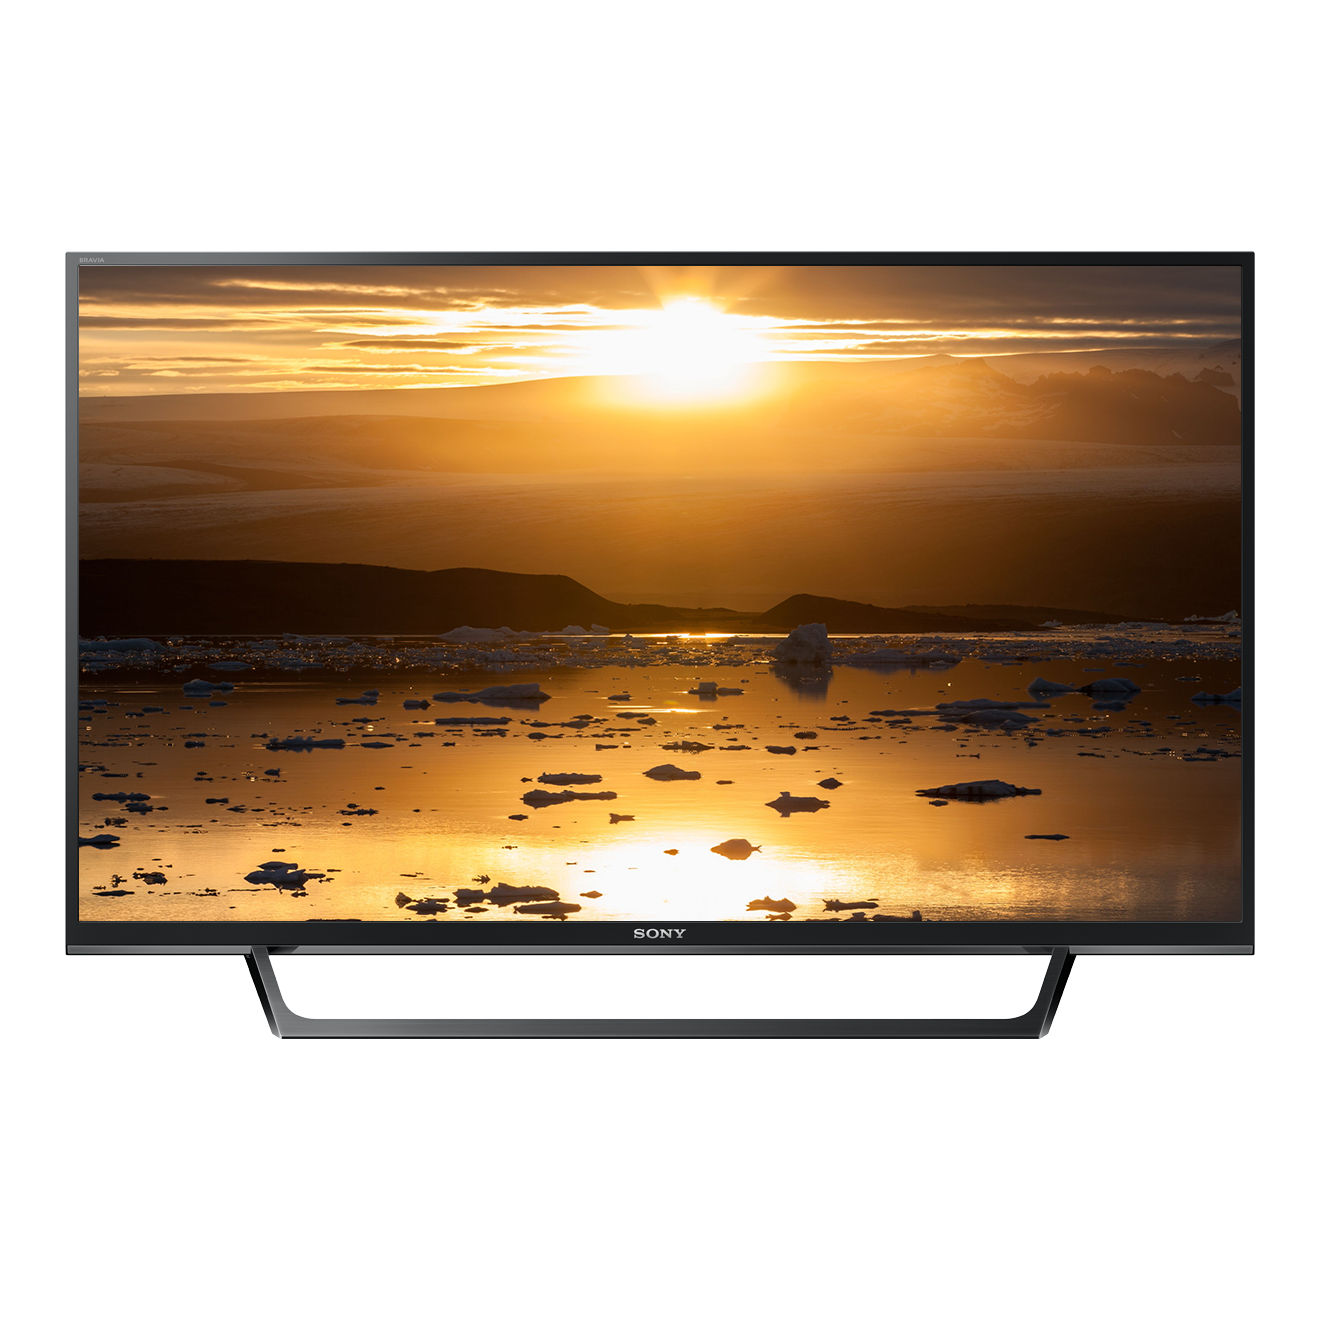 SONY KDL-32W6605 LED cm, 32 Zoll HD-ready, (Flat, TV, / Linux) SMART 80 TV